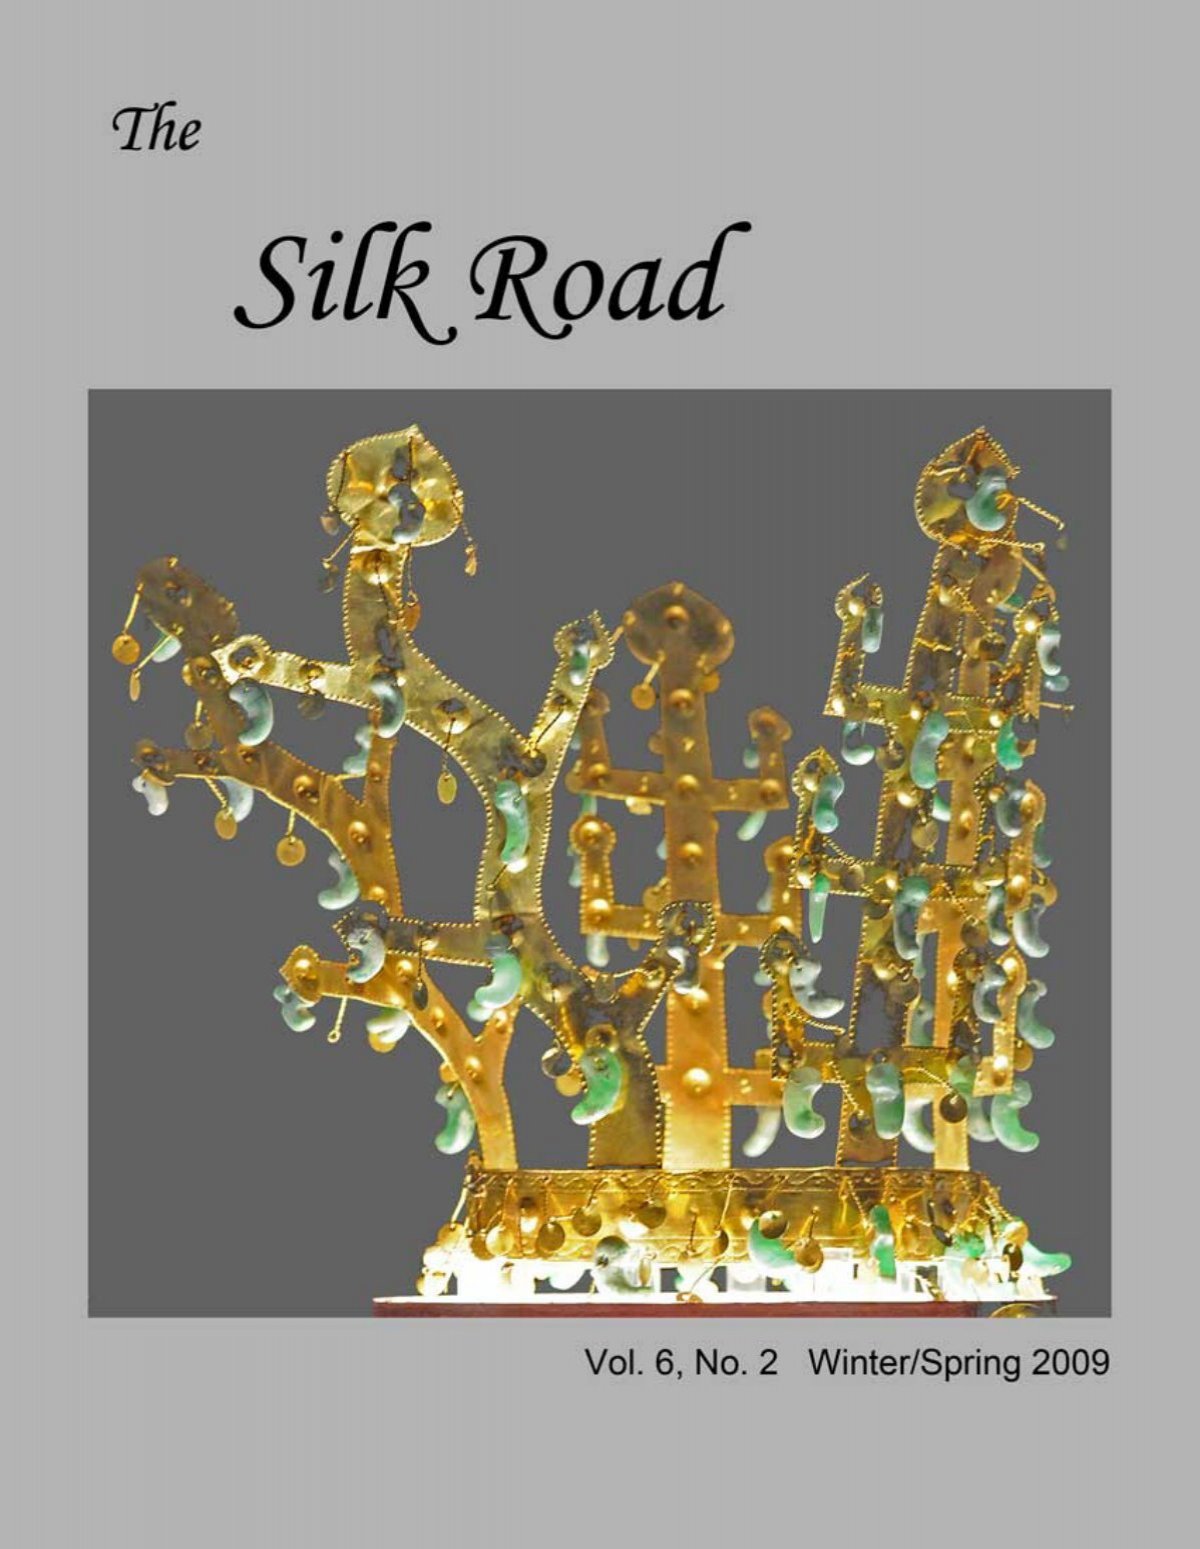 Volume 6, Number 2 (Winter/Spring 2009) - The Silkroad Foundation